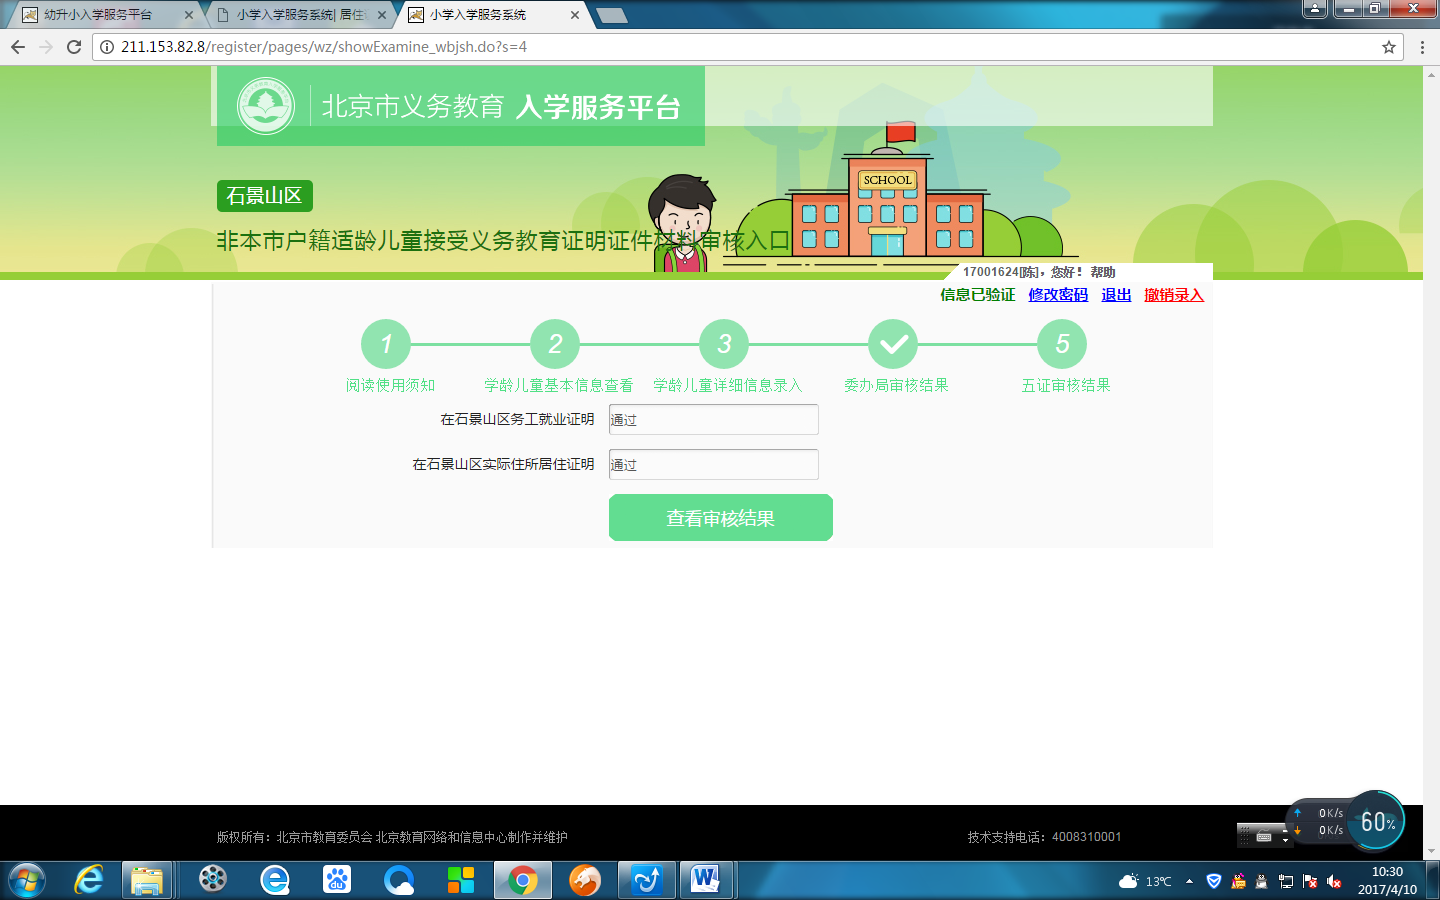 非北京市户籍适龄儿童入学信息采集流程图7